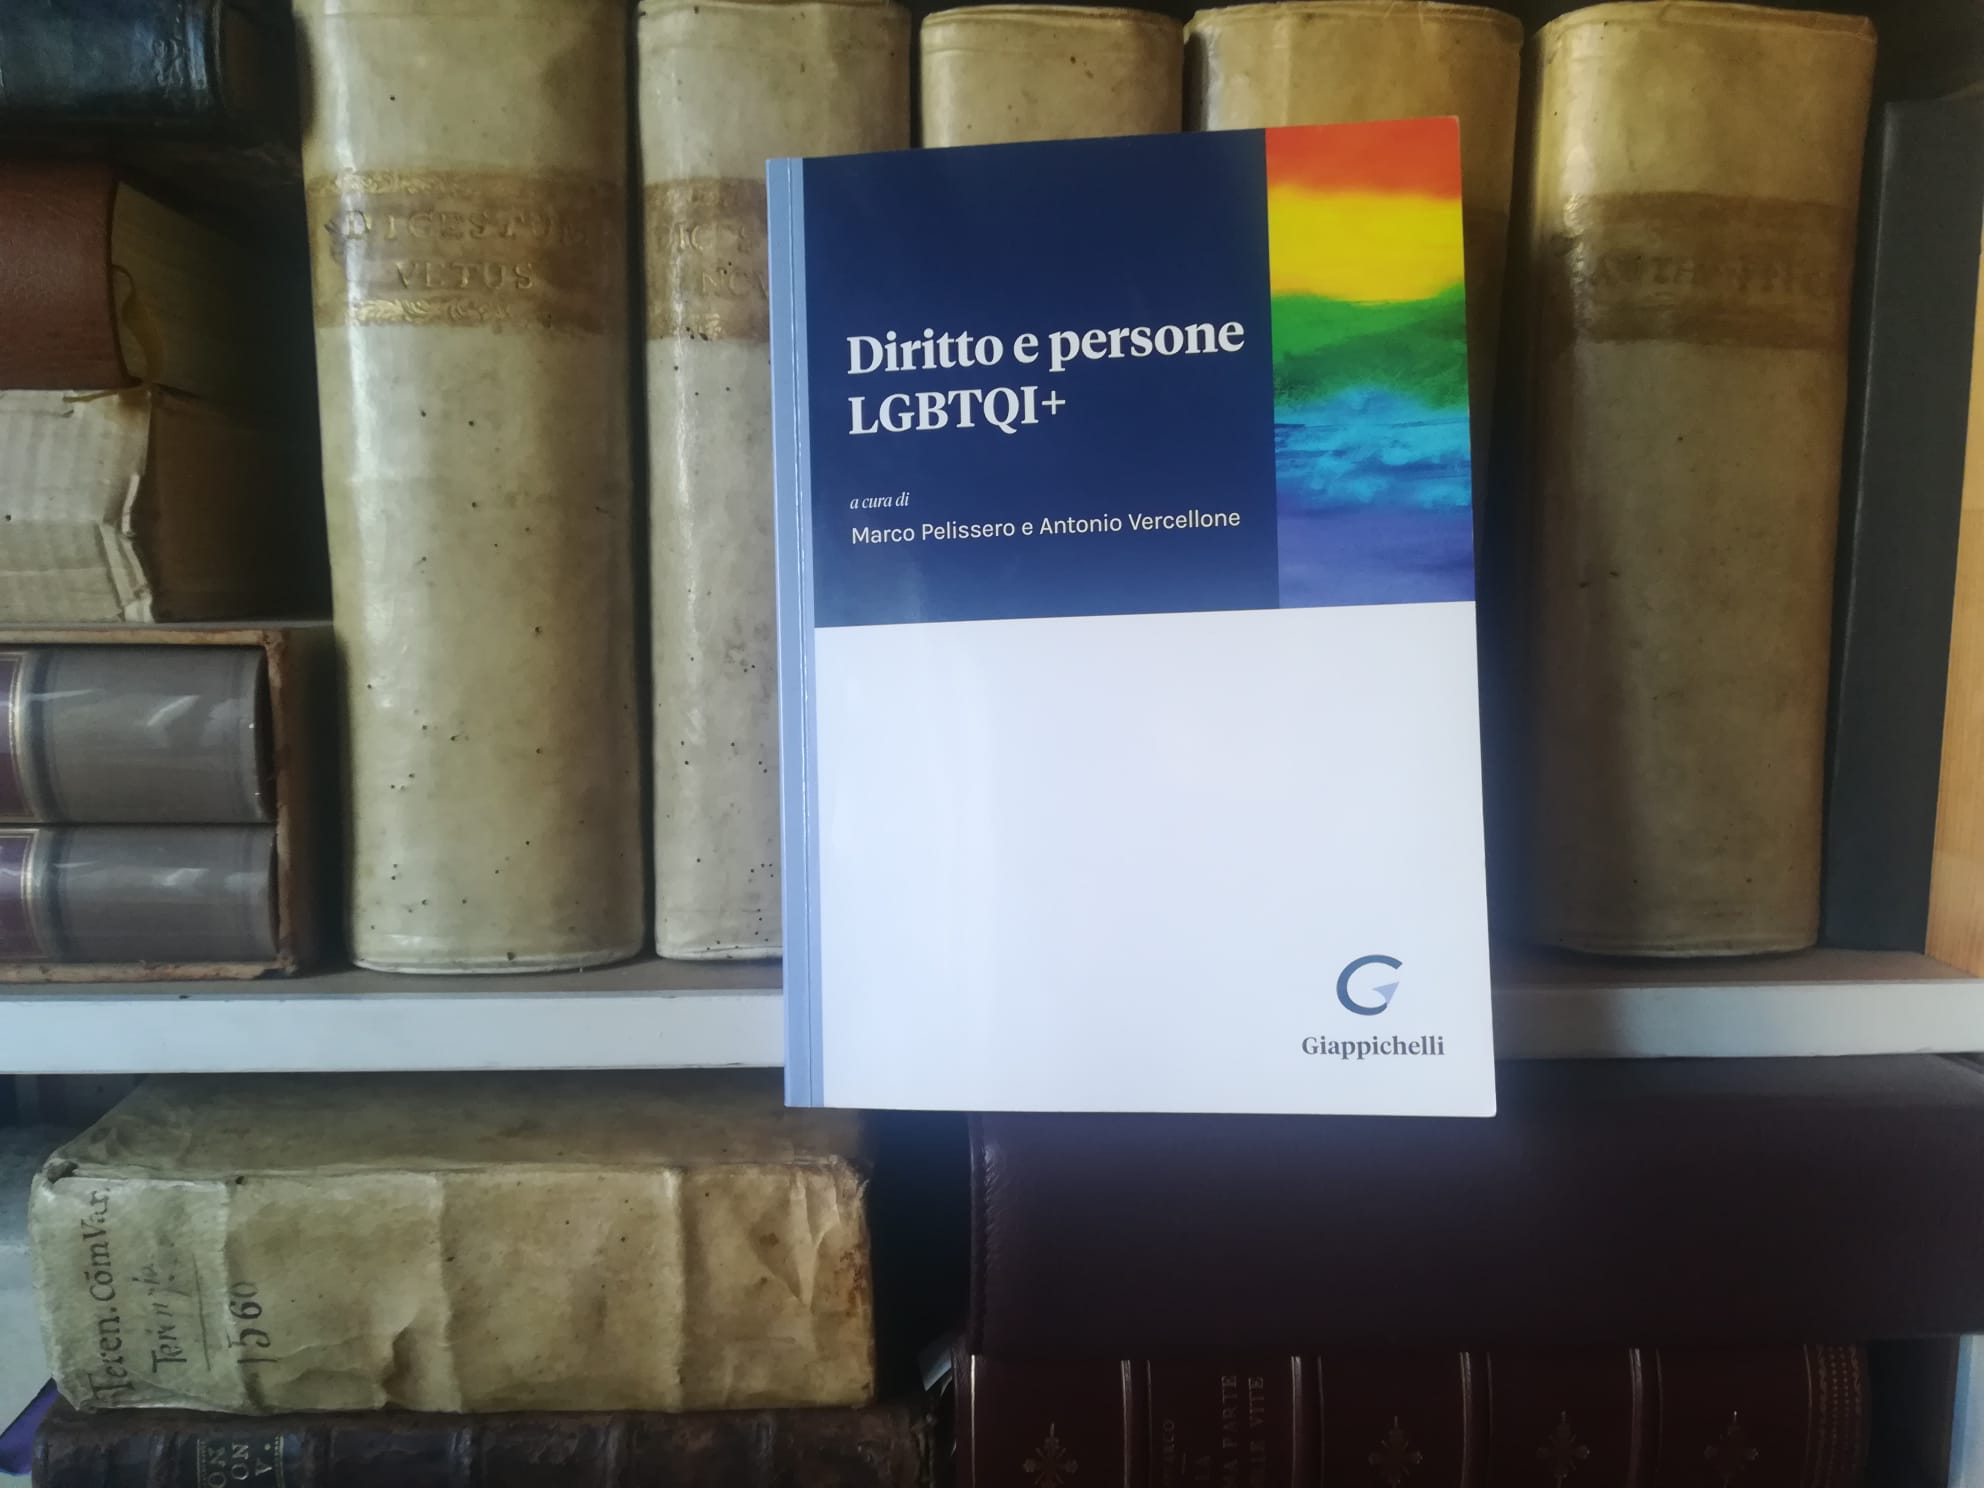 Diritto e persone lgbtqi+, una lettura proposta di Pierpaolo Gori​[1]